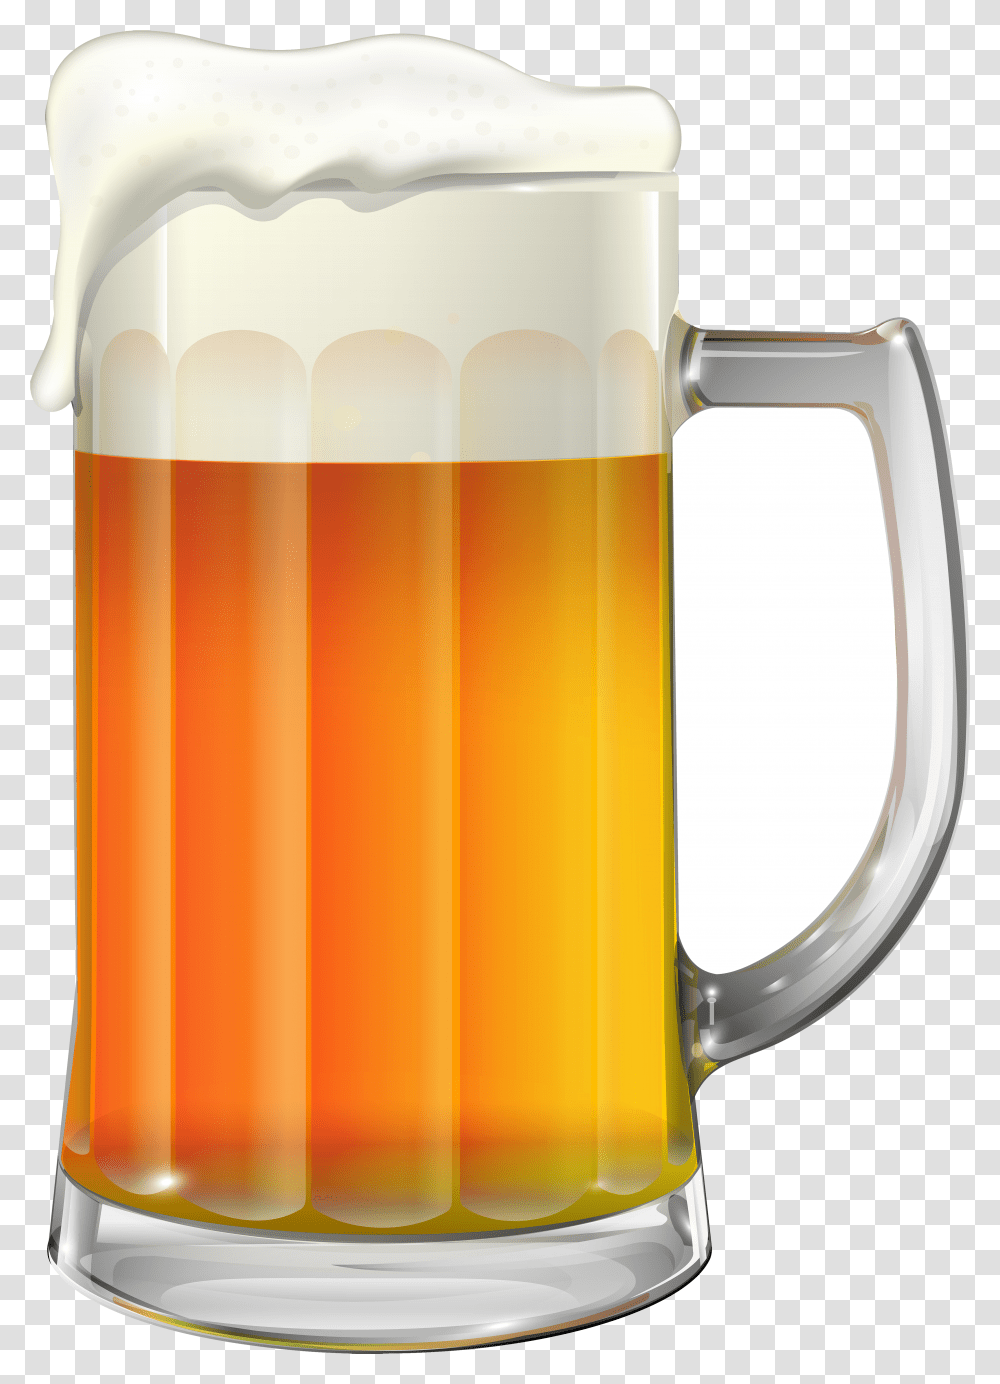 Beer Mug Clip Art Image Gallery Background Beer Mug Clip Art, Glass, Alcohol, Beverage, Drink Transparent Png